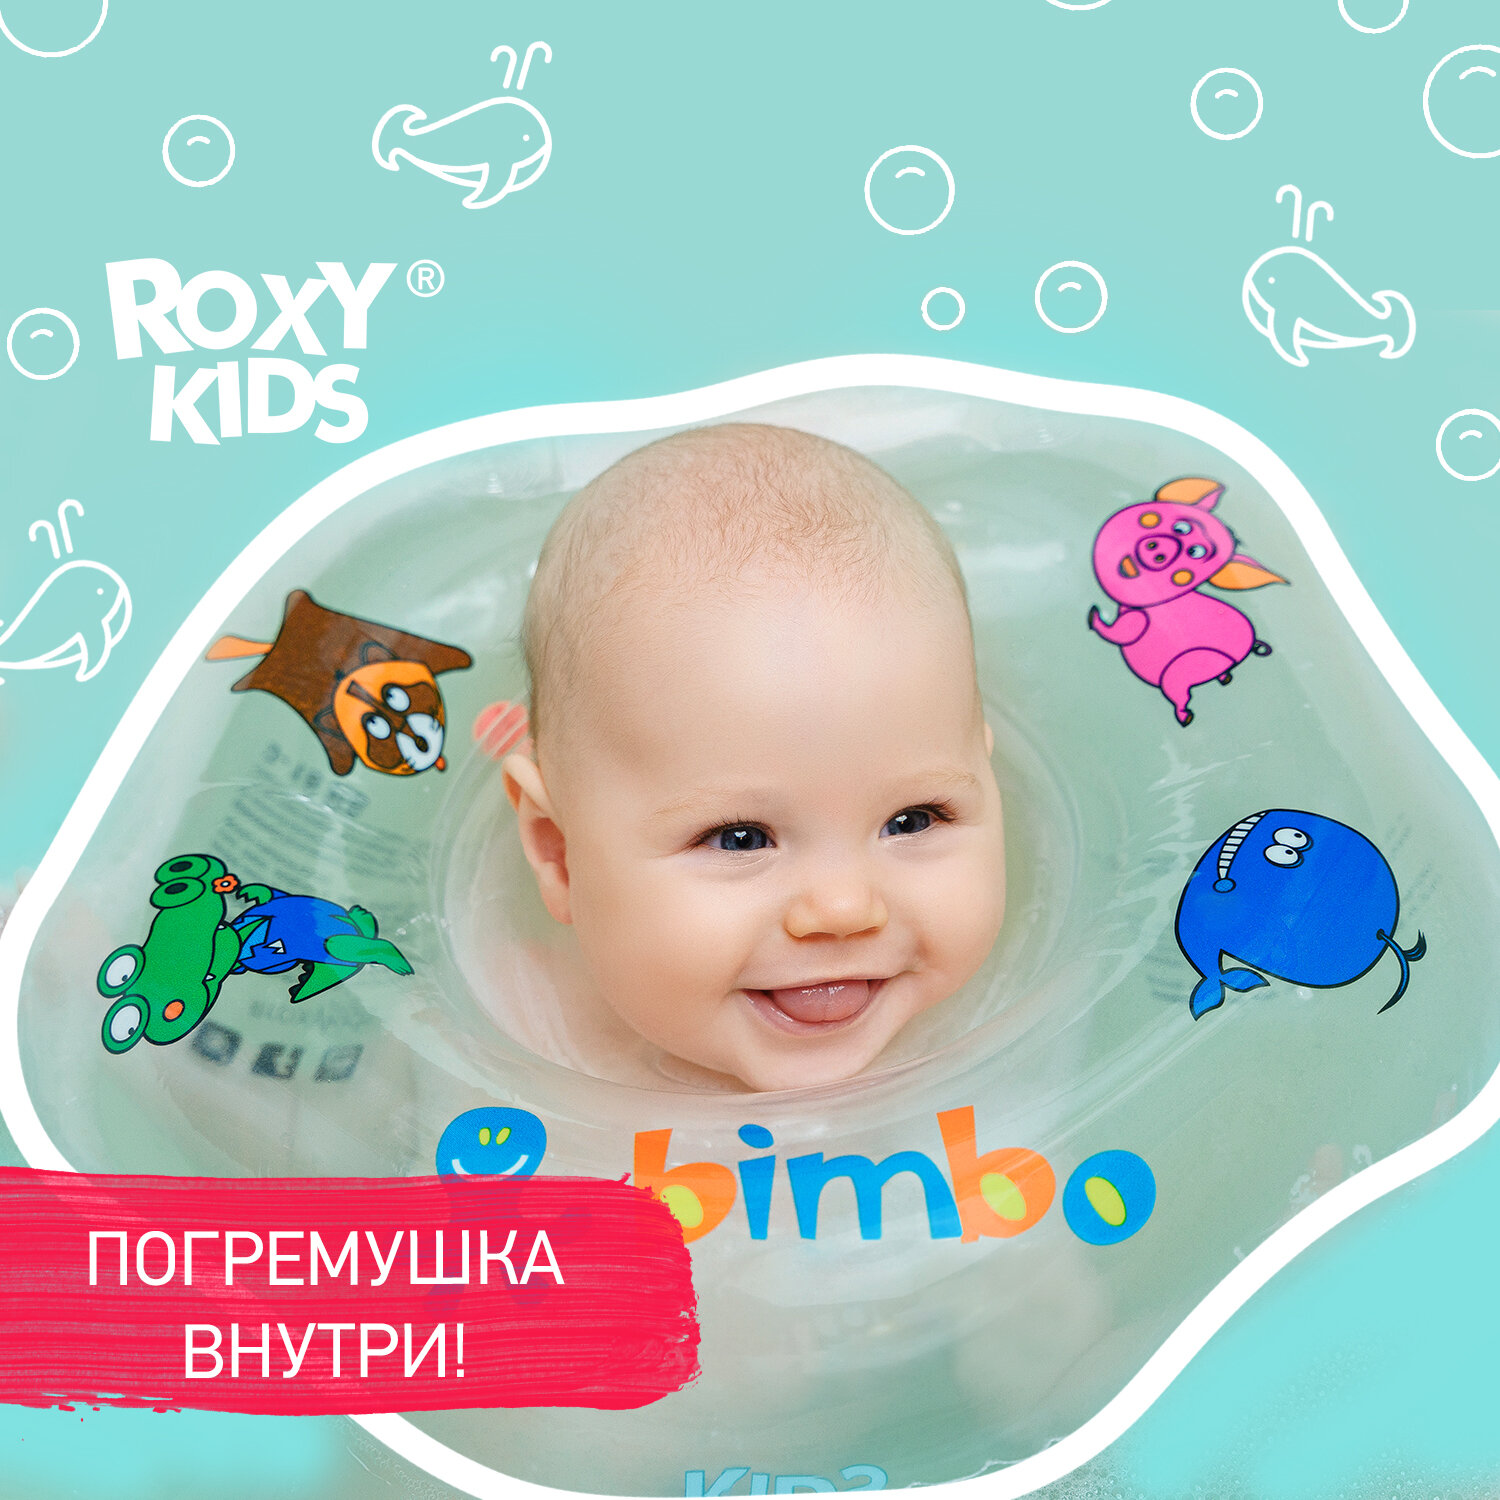 ROXY-KIDS Bimbo RN-004 прозрачный